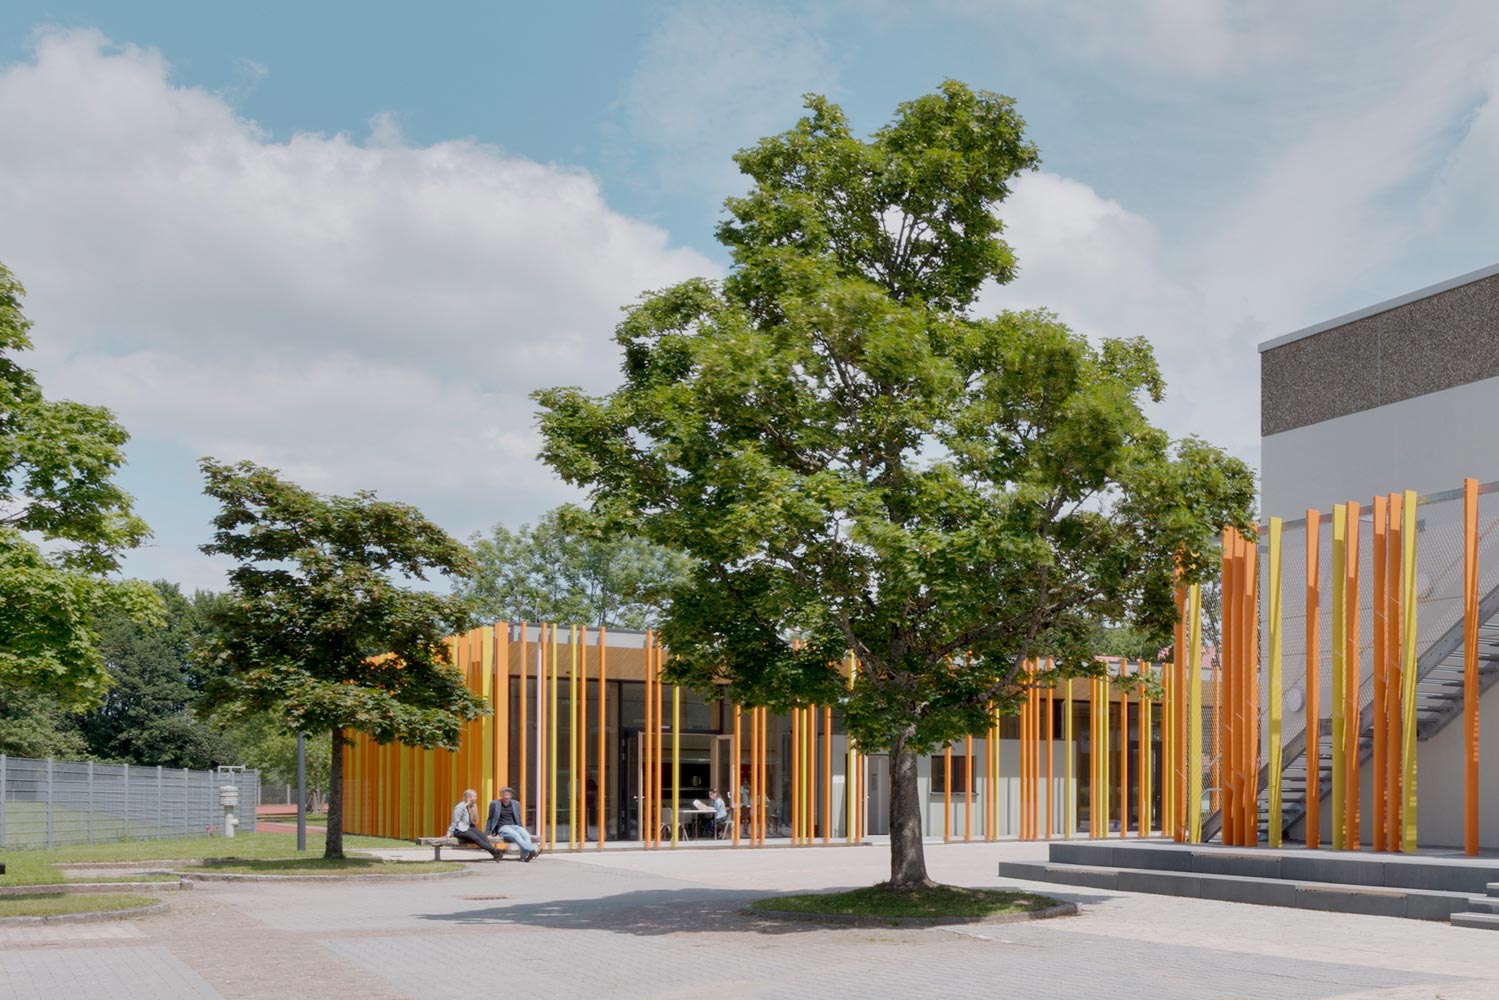 Aula-Mensa Schramberg - ein farbenfrohes, leicht und freundlich wirkendes Gebäude für den Schulcampus (Quelle: Konrad Zerbe)